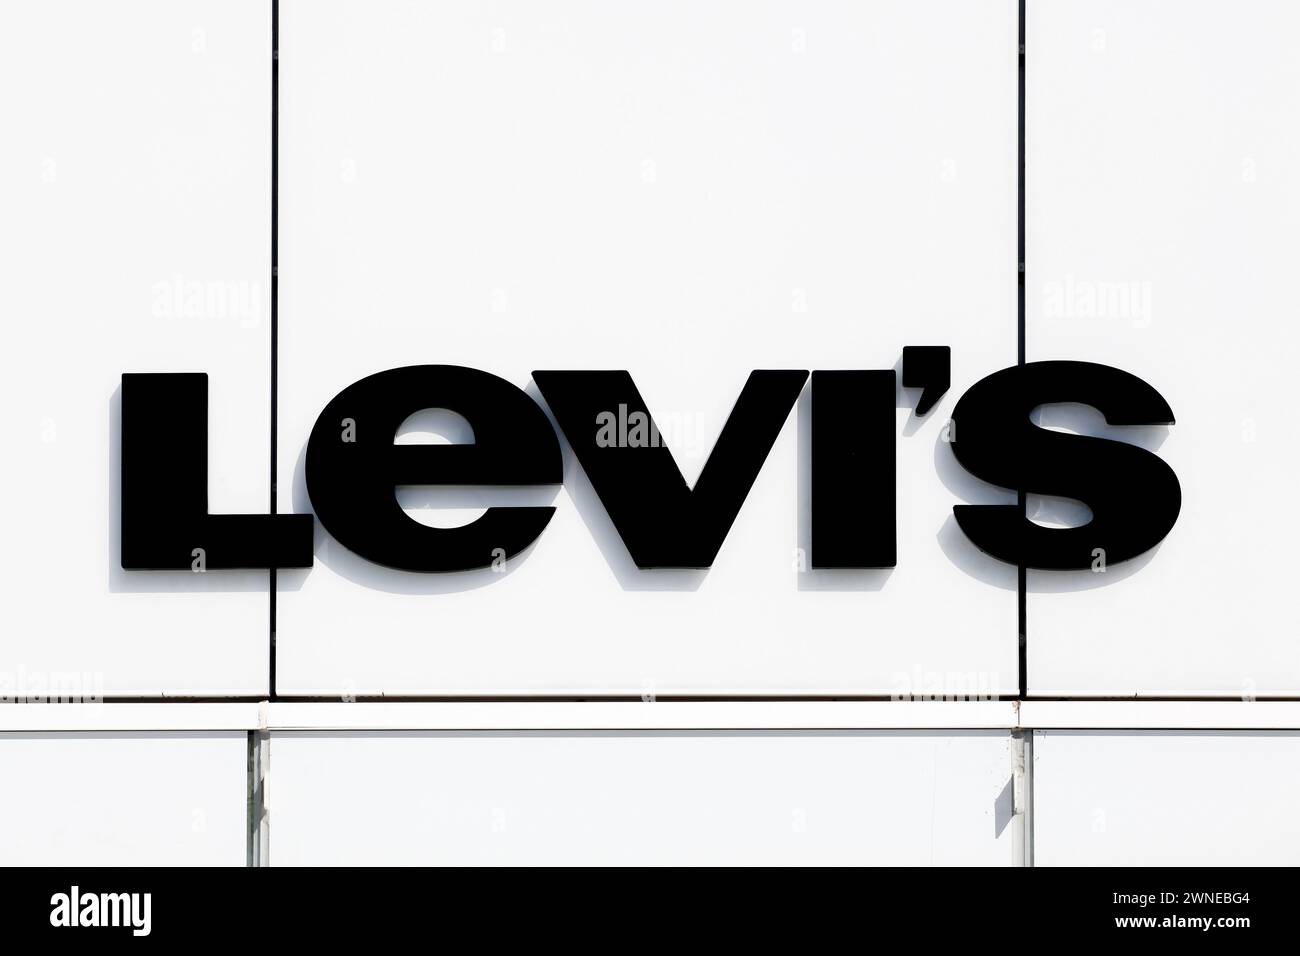 Villefontaine, Frankreich - 13. September 2019: Levi Strauss-Logo an einer Wand. Levi Strauss wurde 1853 gegründet und ist ein US-amerikanisches Bekleidungsunternehmen Stockfoto